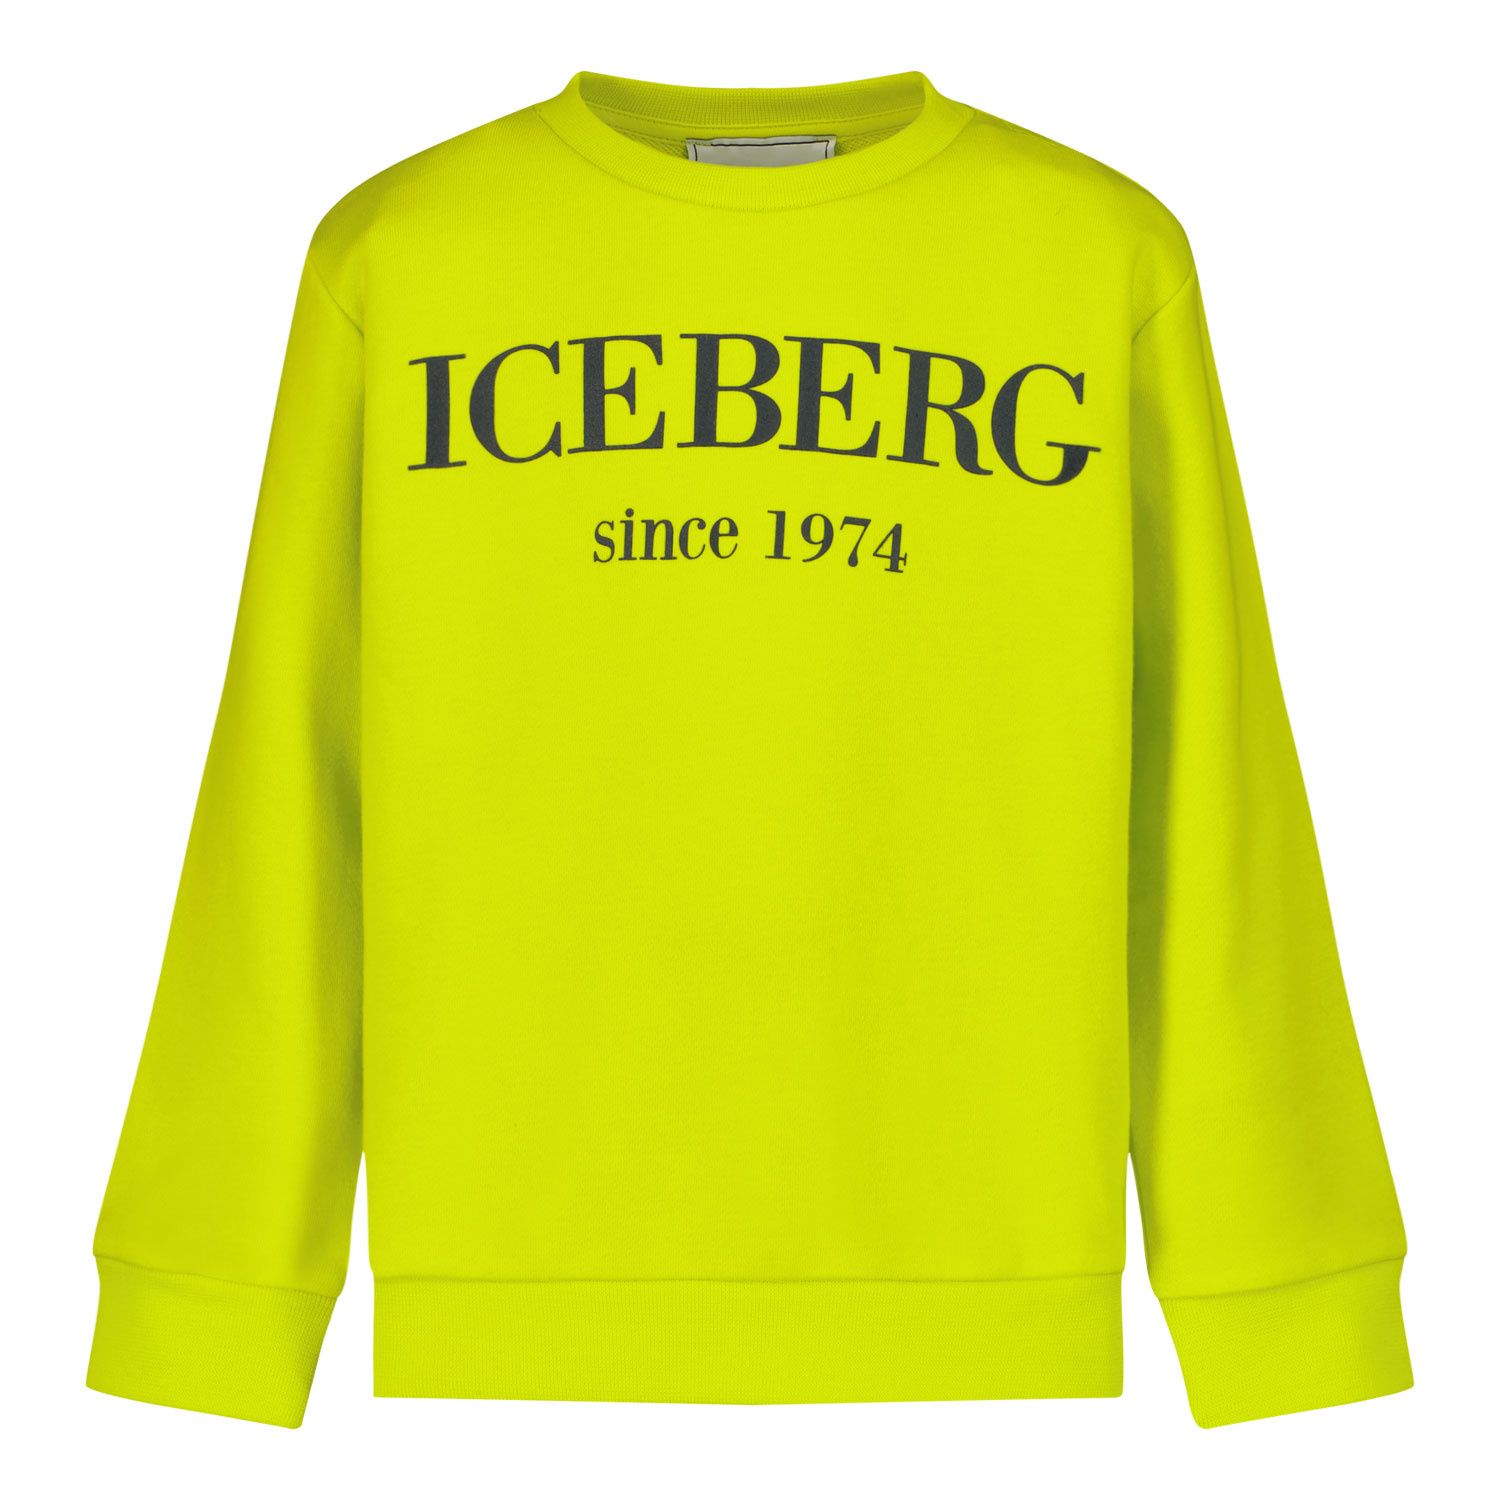 Afbeelding van Iceberg MFICE0106B kindertrui lime